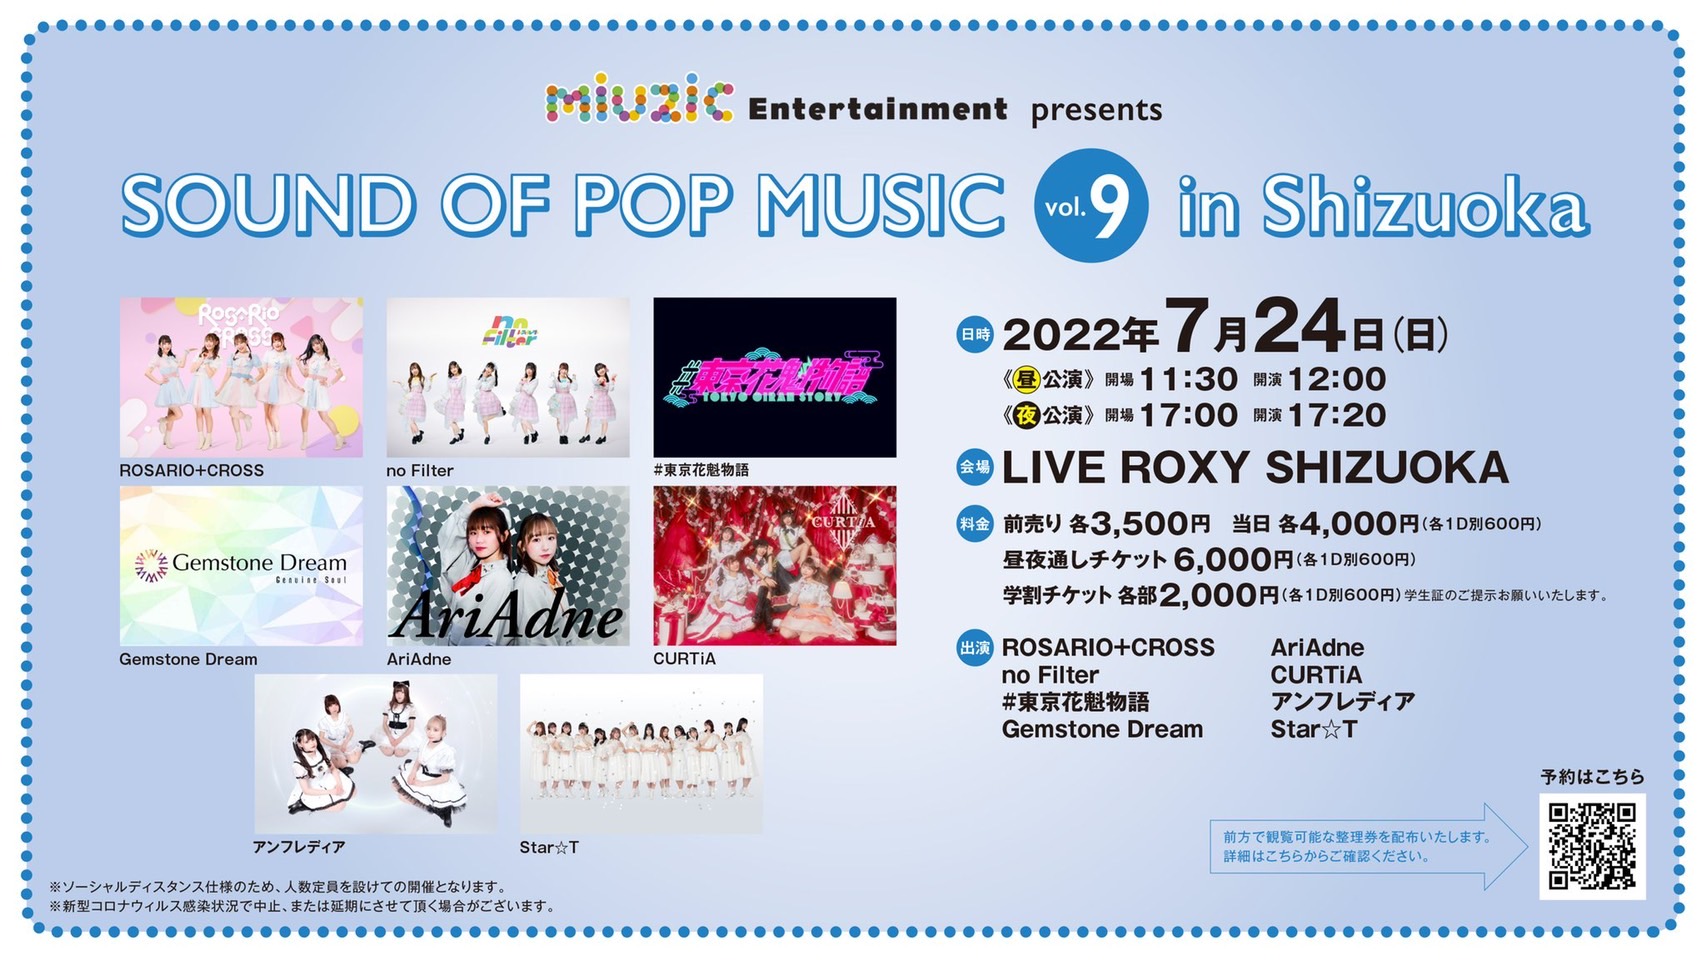 《昼夜通し》7/24(日) miuzic Entertainment presents 「SOUND OF POP MUSIC vol.9 in Shizuoka」